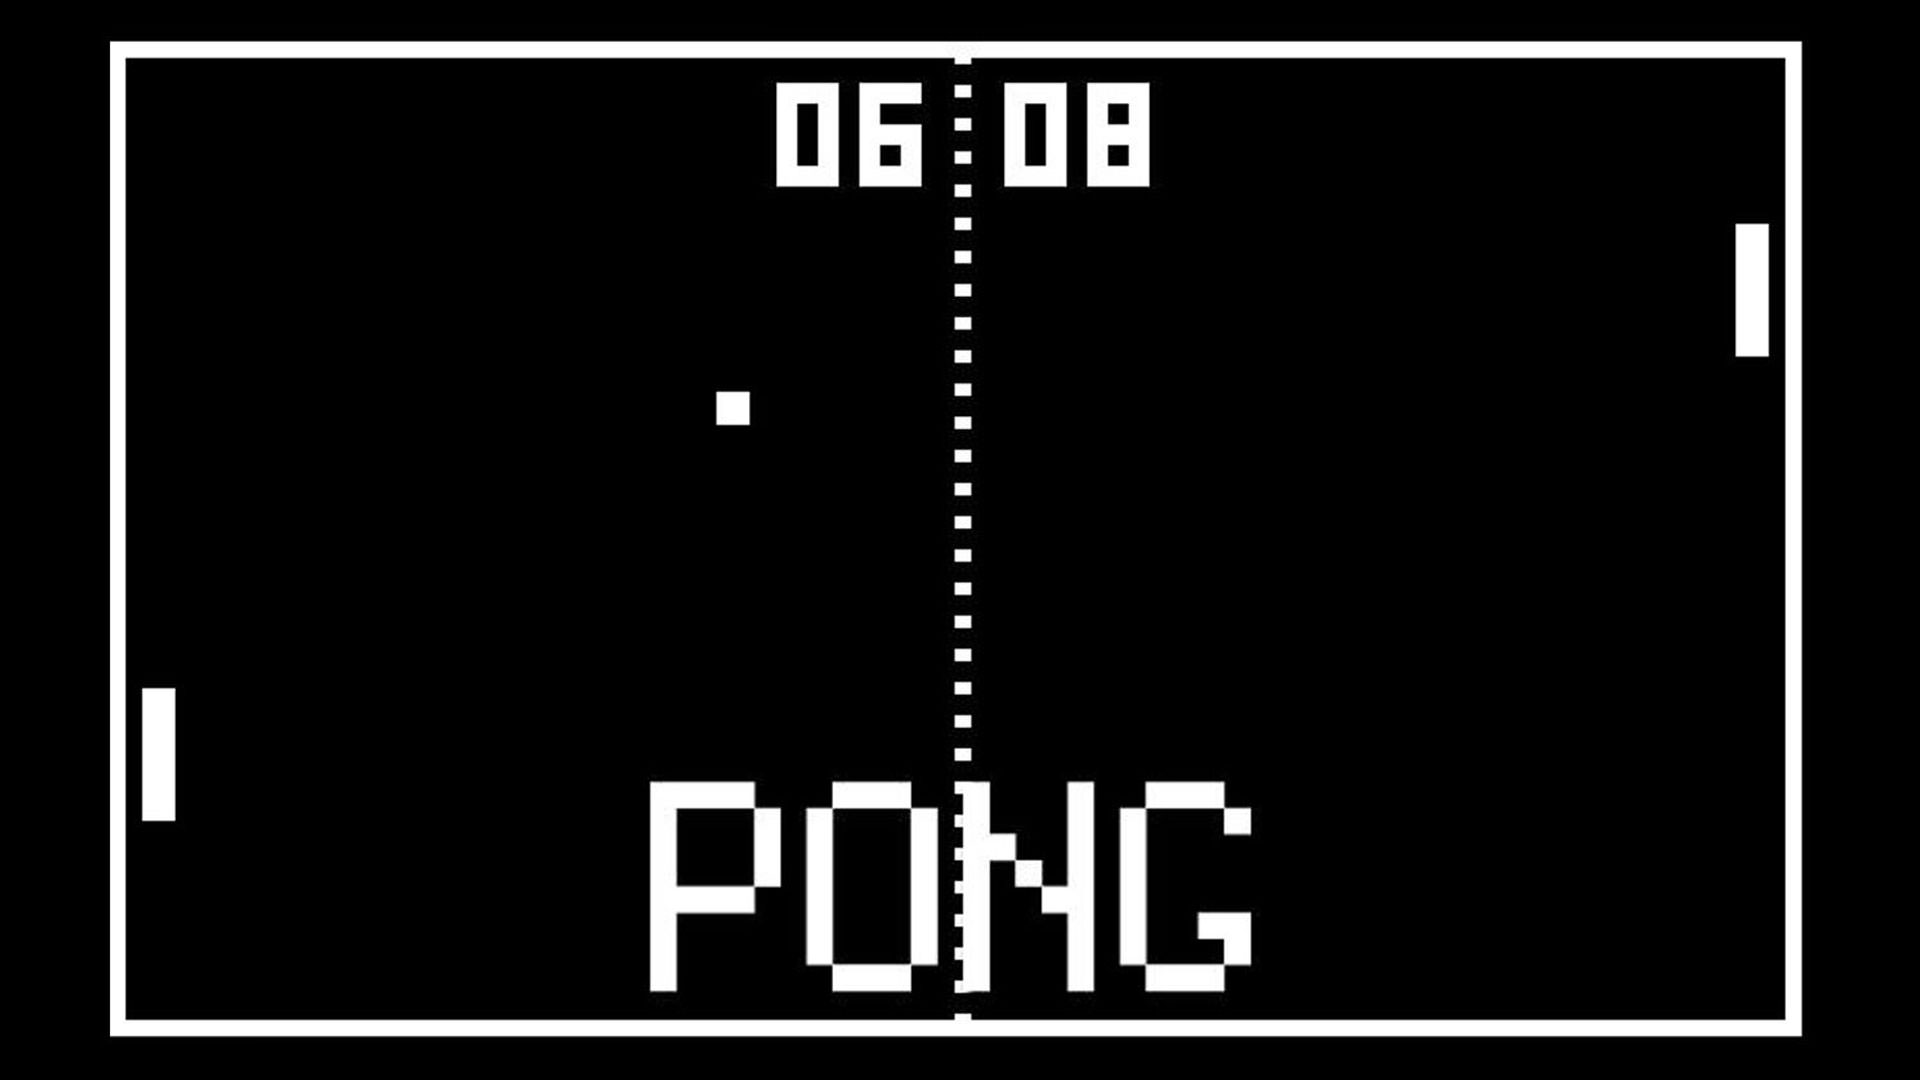 بازی Pong یکی از قدیمی ترین بازی های ورزشی